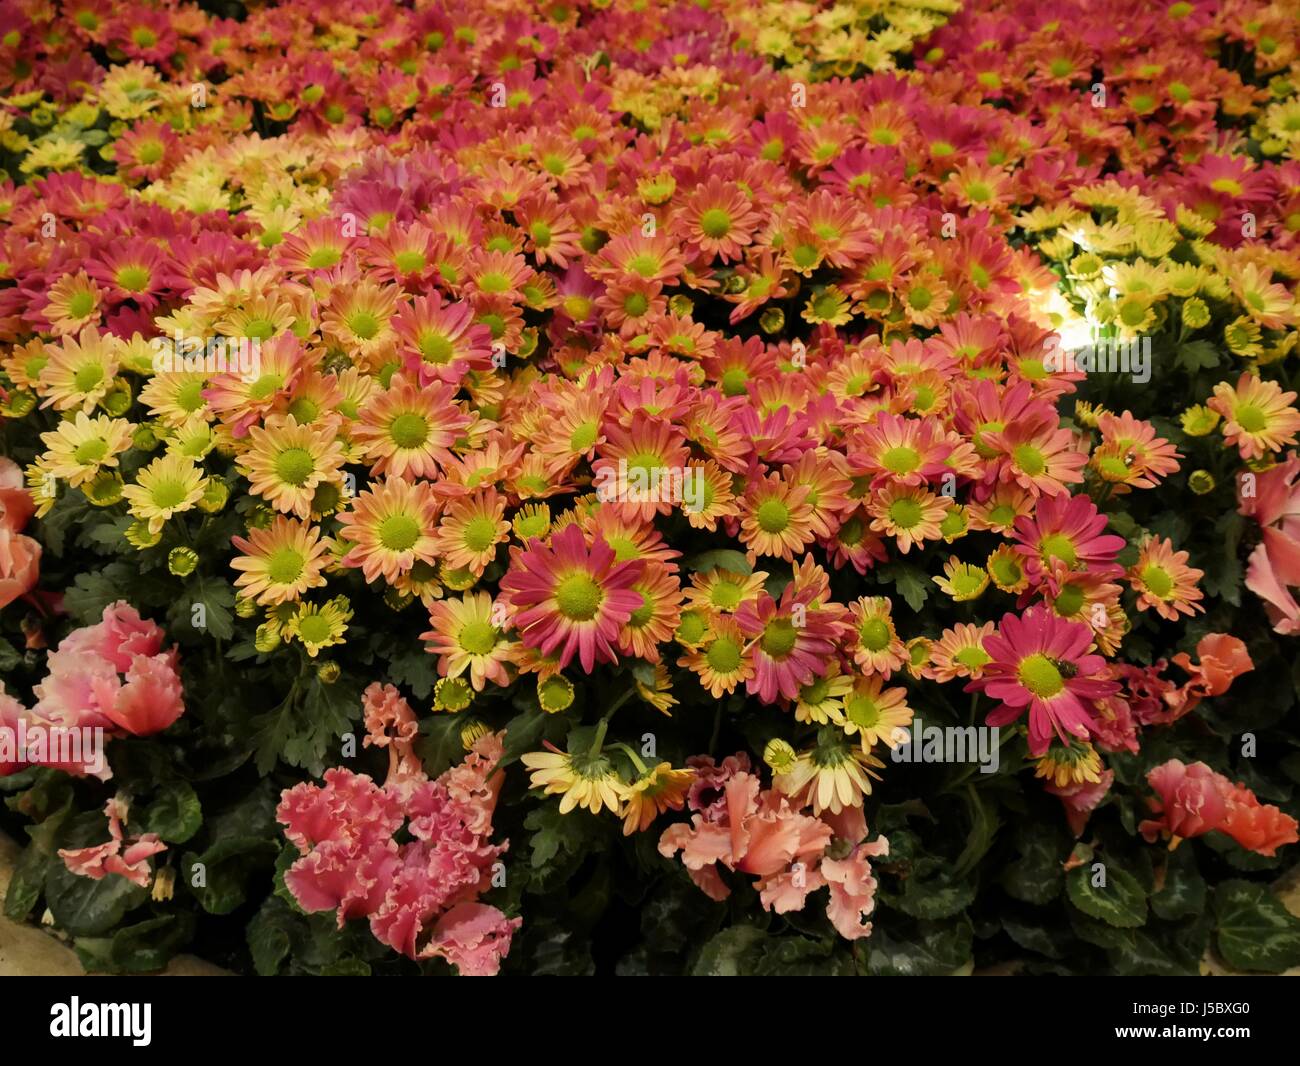 Clusters of Perenial Gaillardia (Blanket flower) Stock Photo